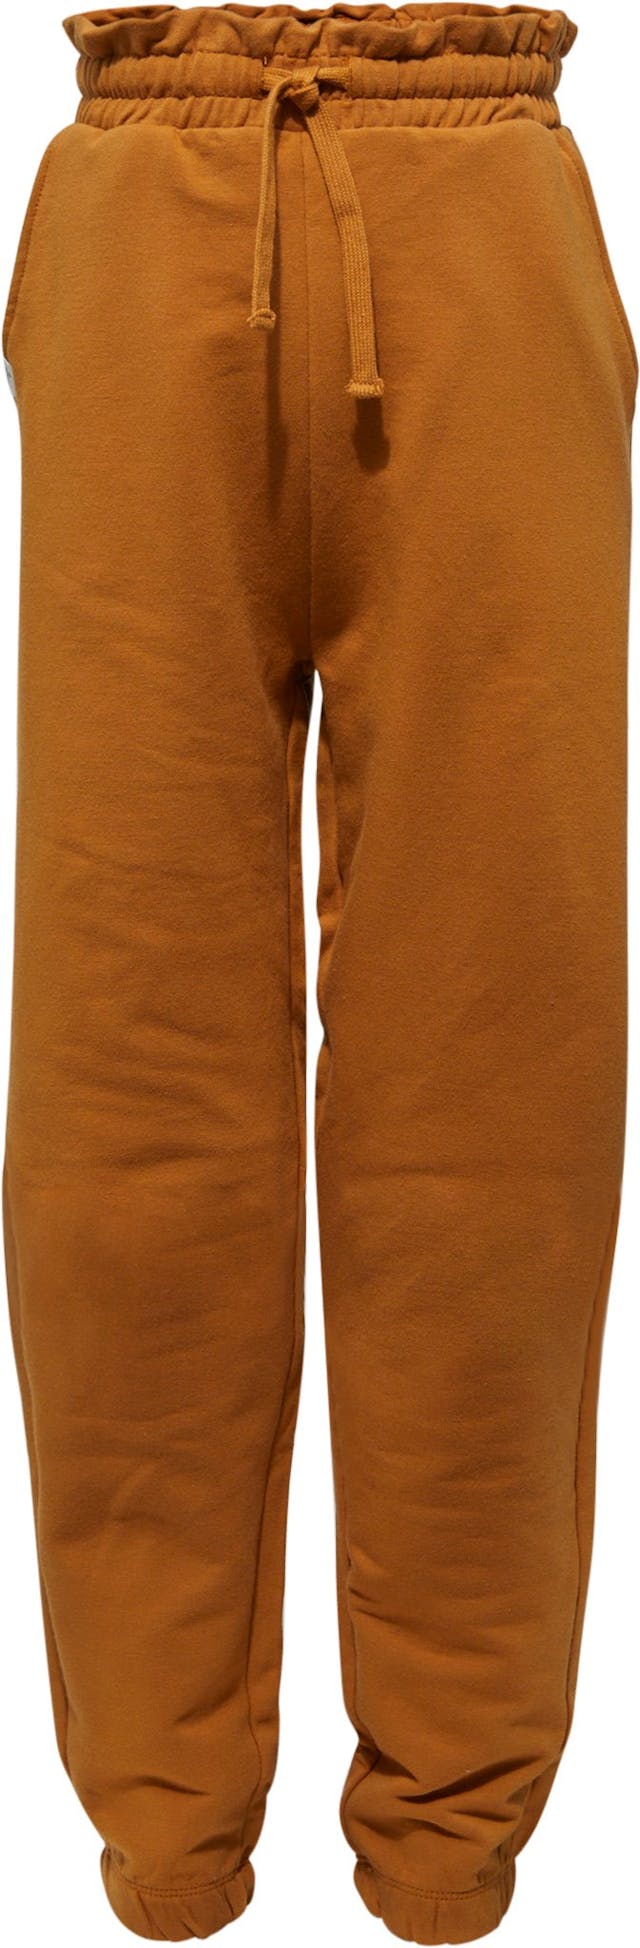 Image de produit pour Pantalon en tricot - Fille